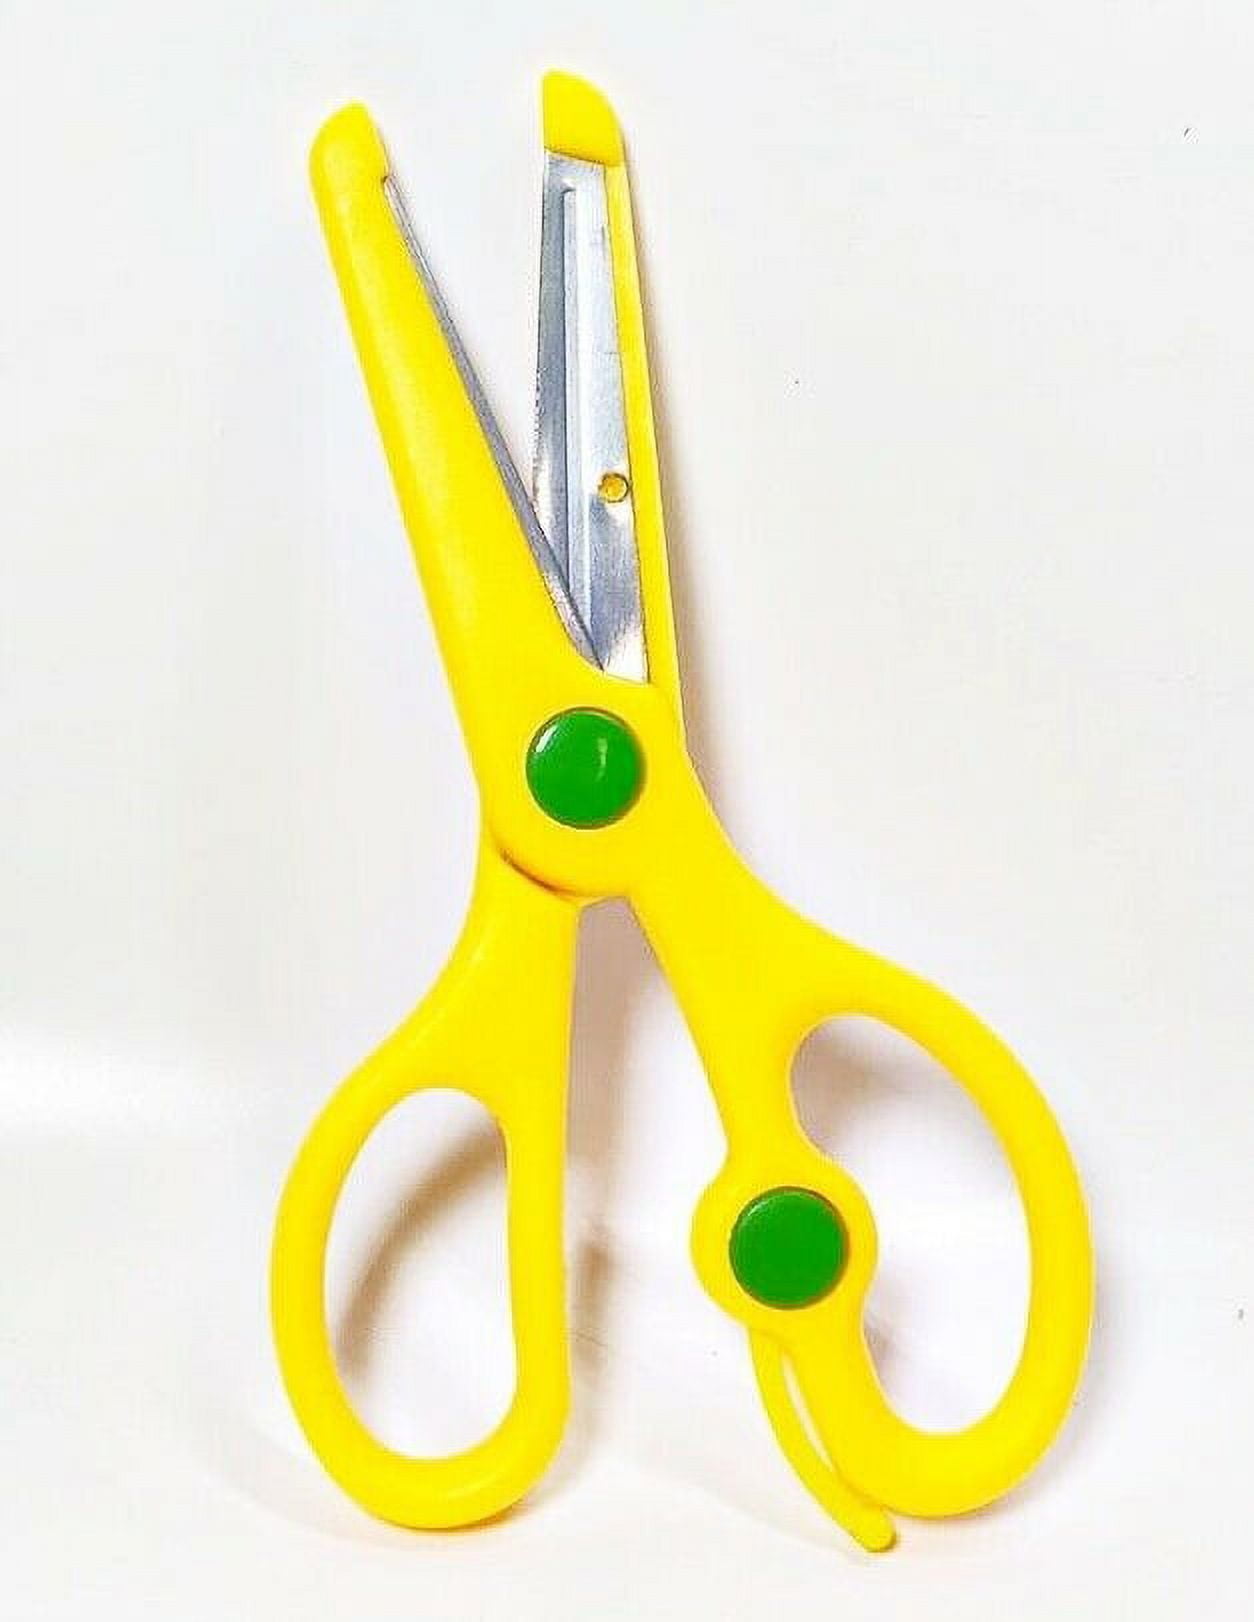 Toddler Safety Scissors All Plastic Scissors For Children Left